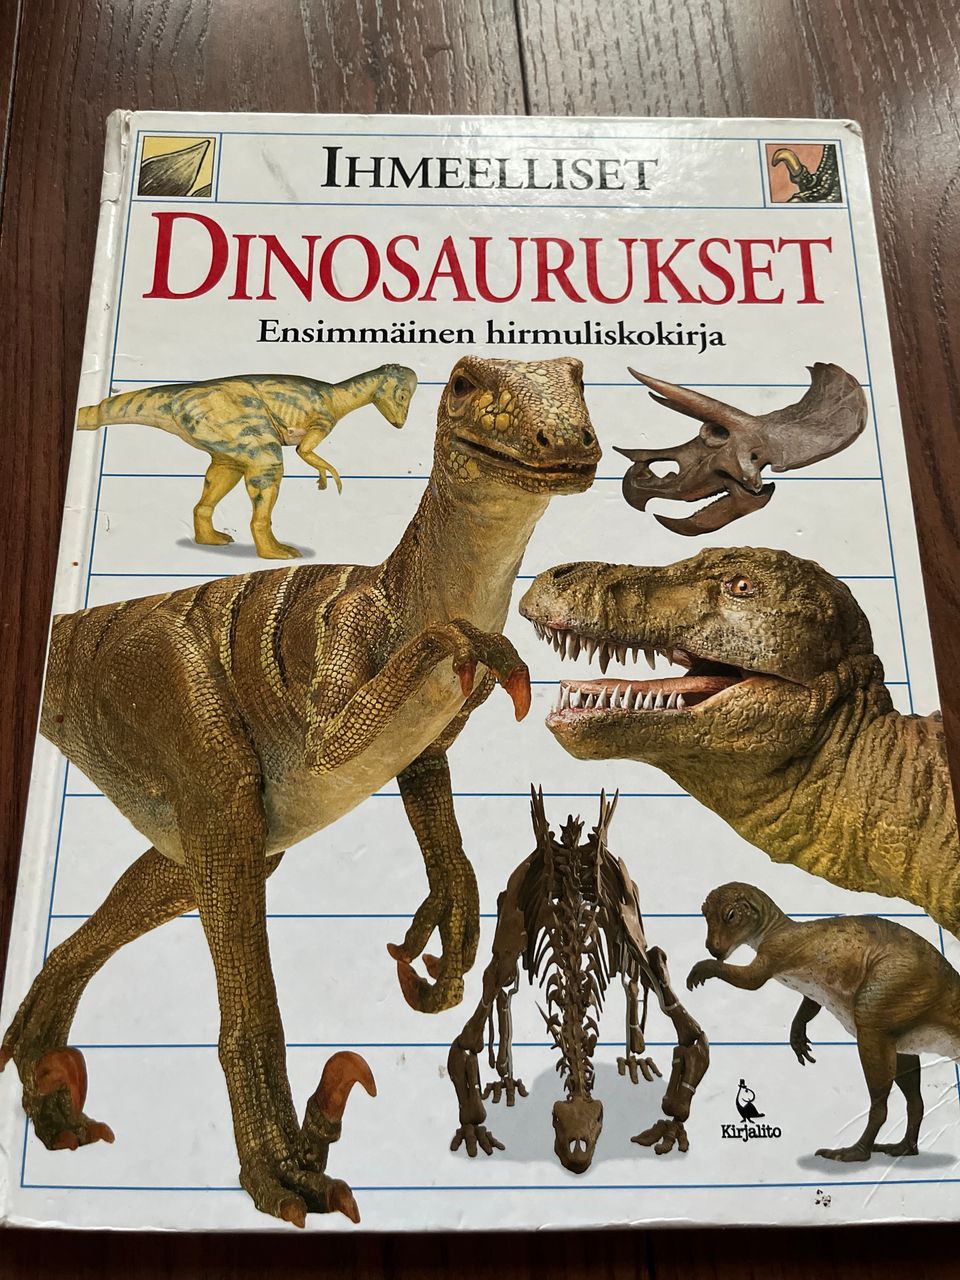 Dinosaurus kirja